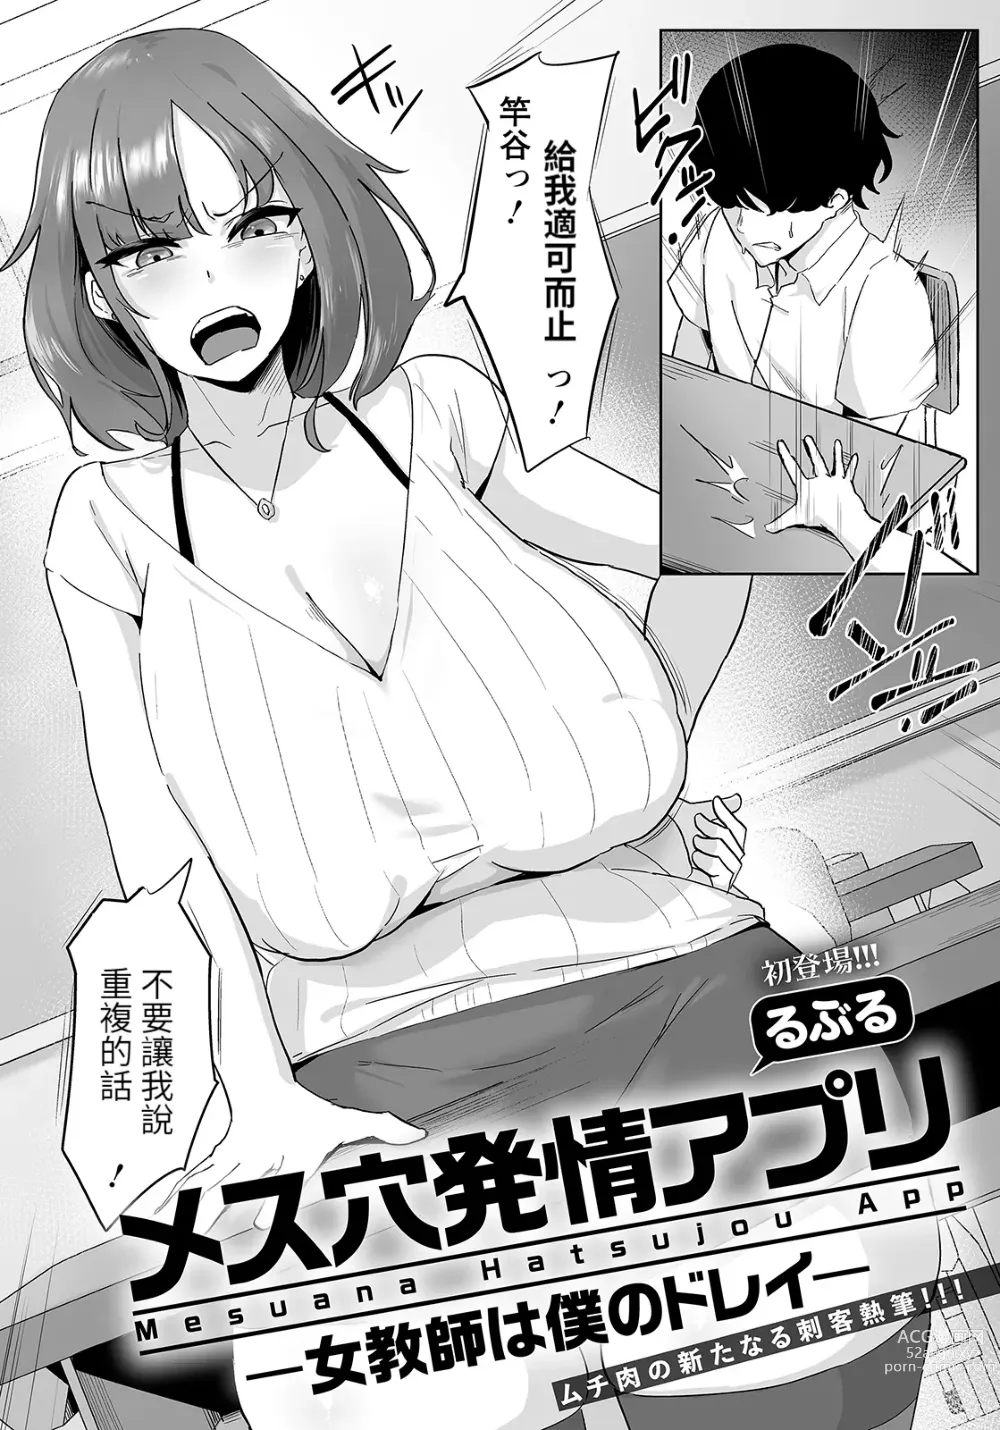 Page 1 of manga Mesuana Hatsujou Appli -Onna Kyoushi  wa Boku no Dorei-